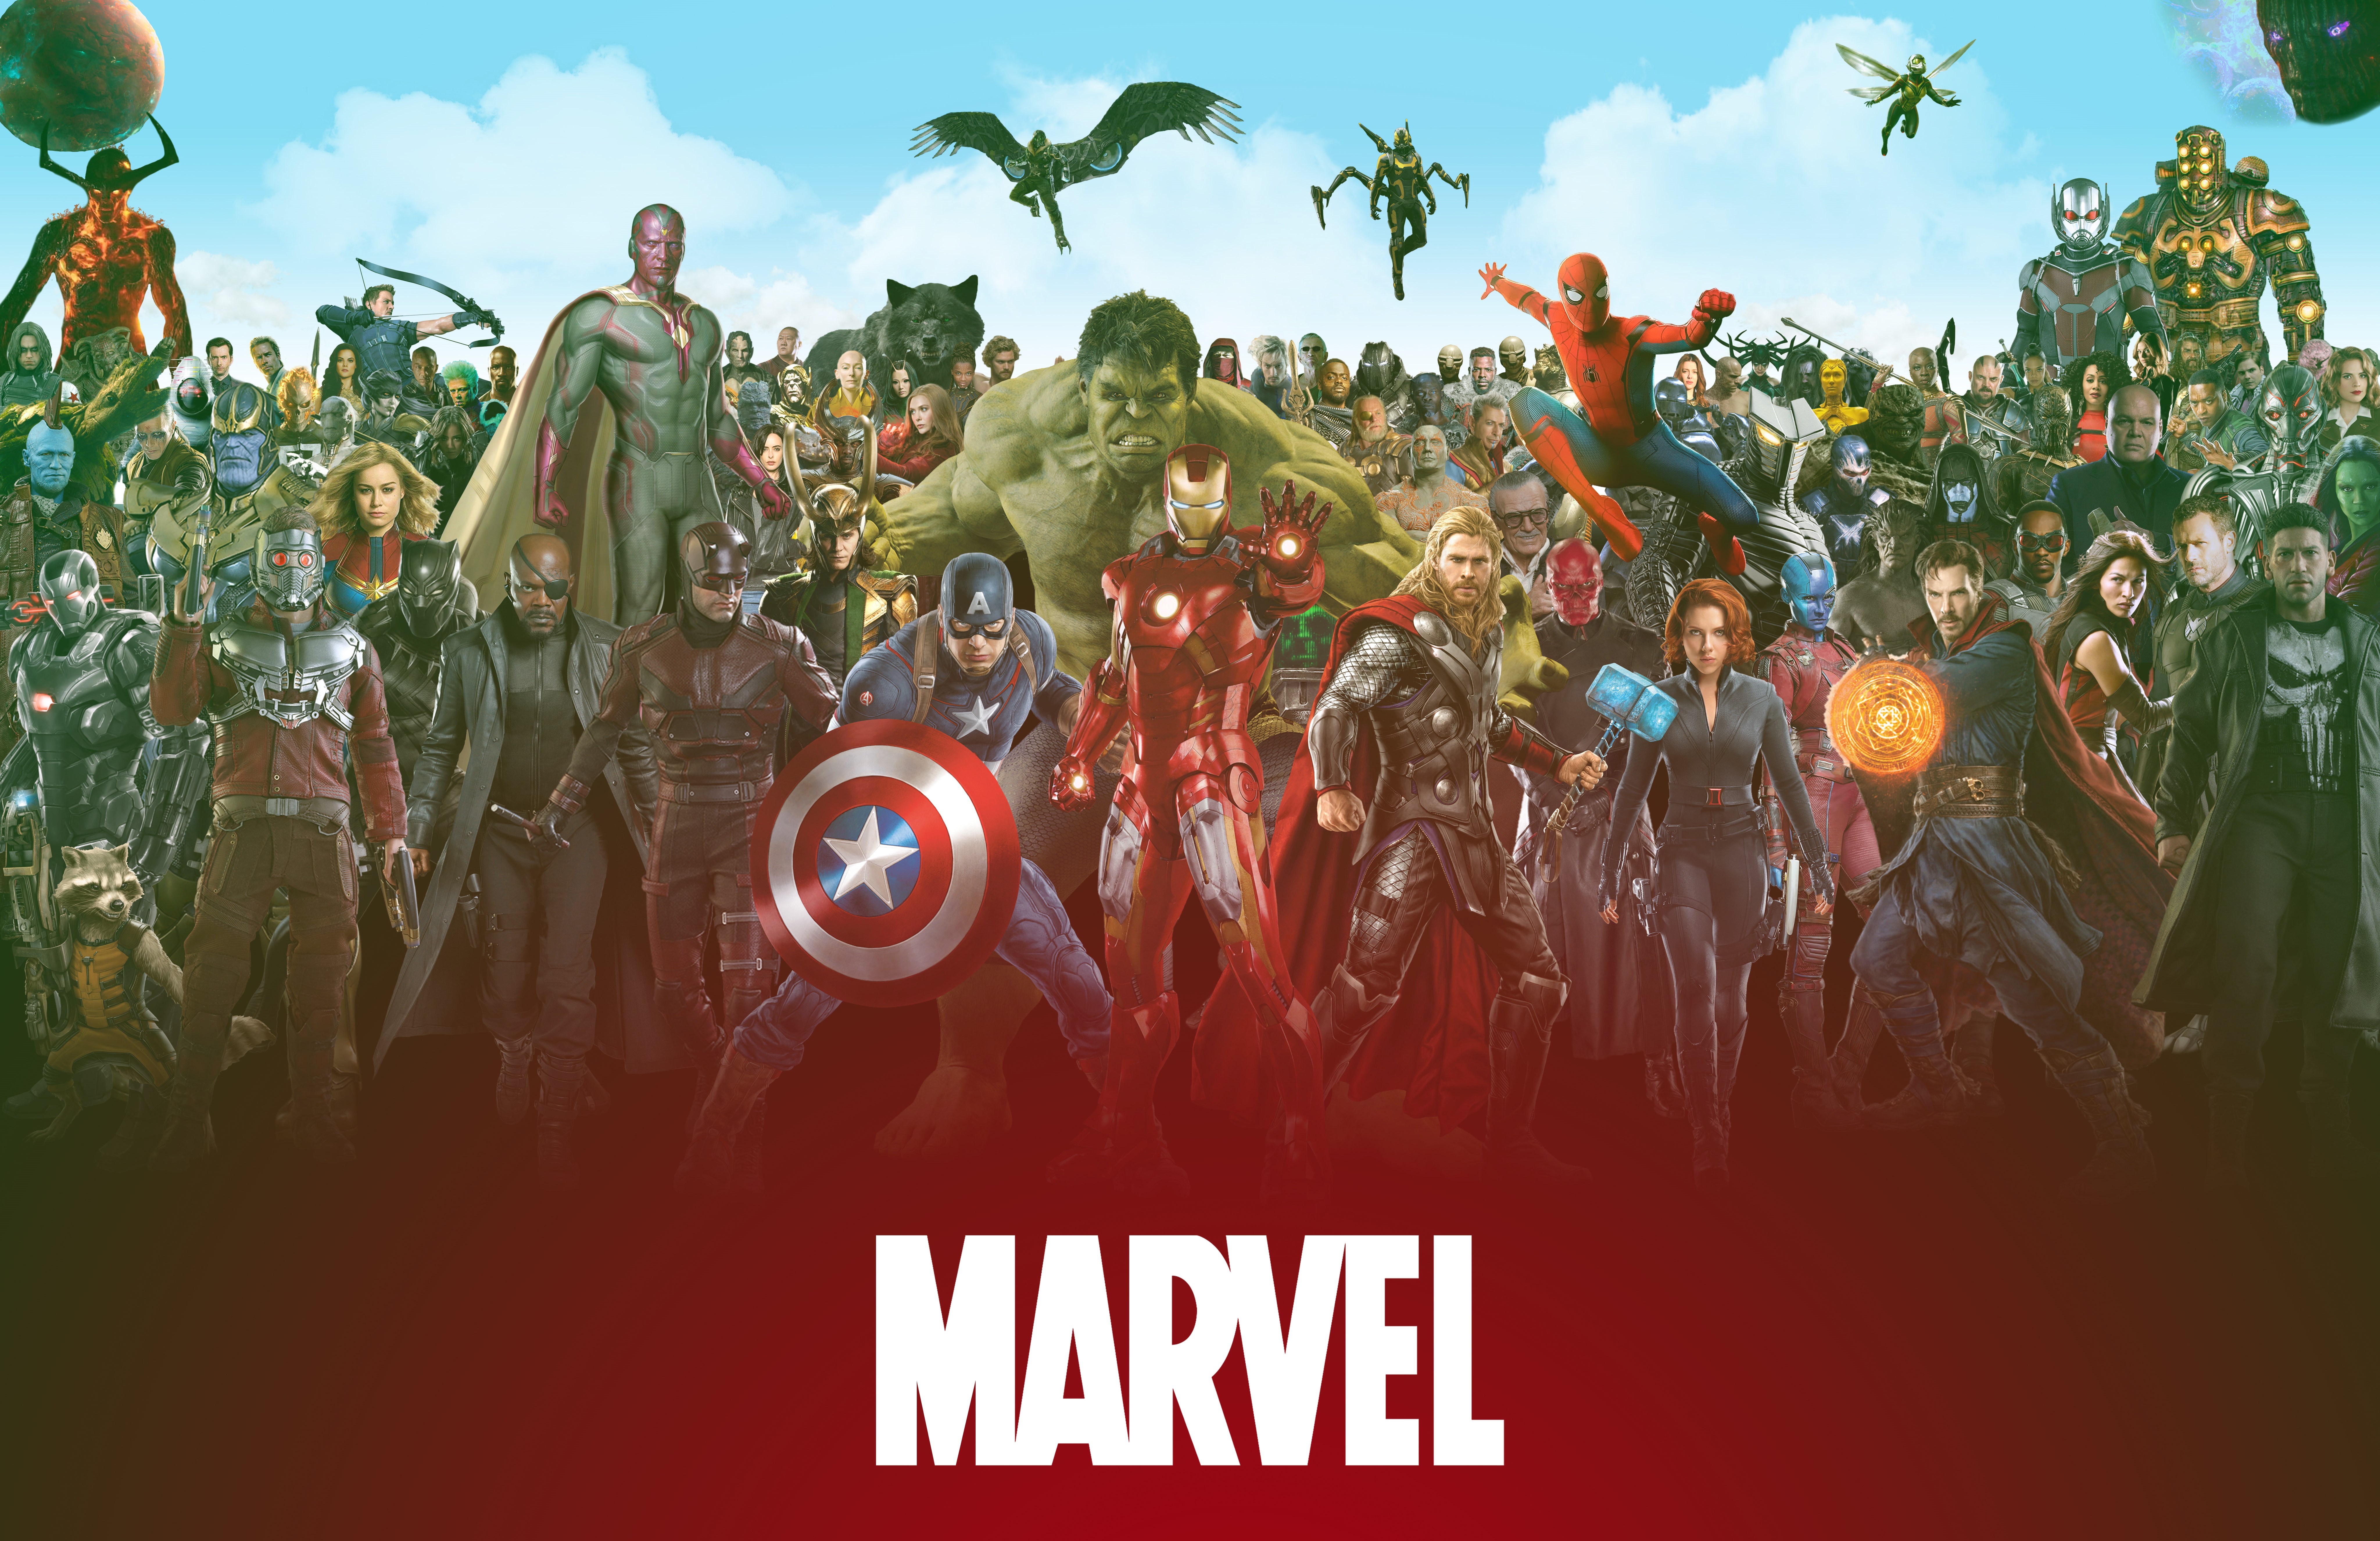 Marvel’ın 2019 Yılındaki Filmleri